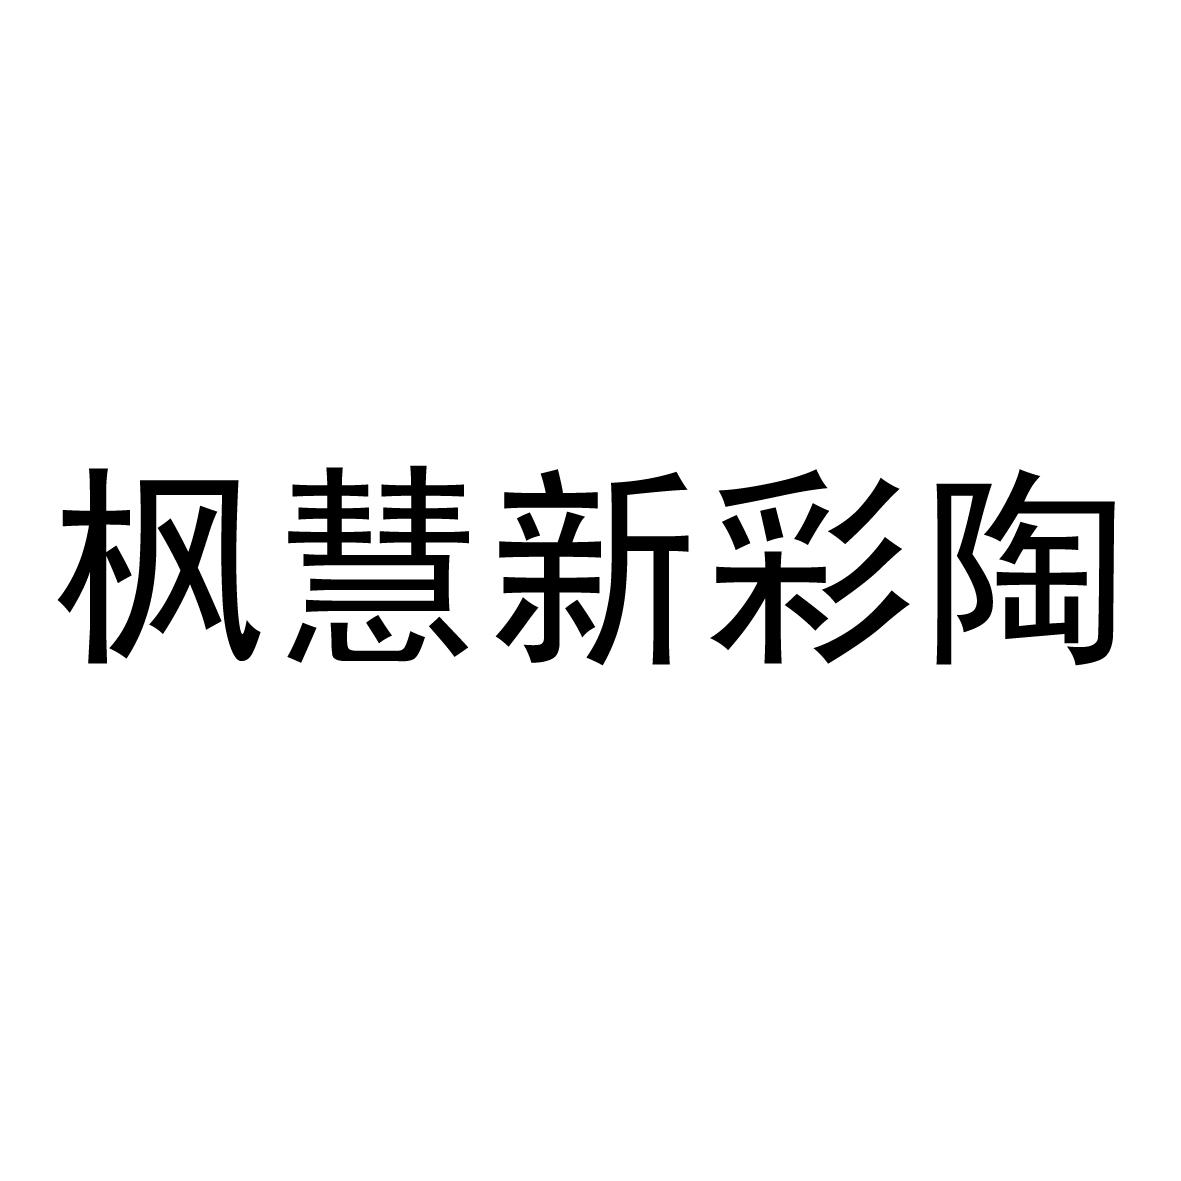 楓慧股份-871202-安徽楓慧金屬股份有限公司